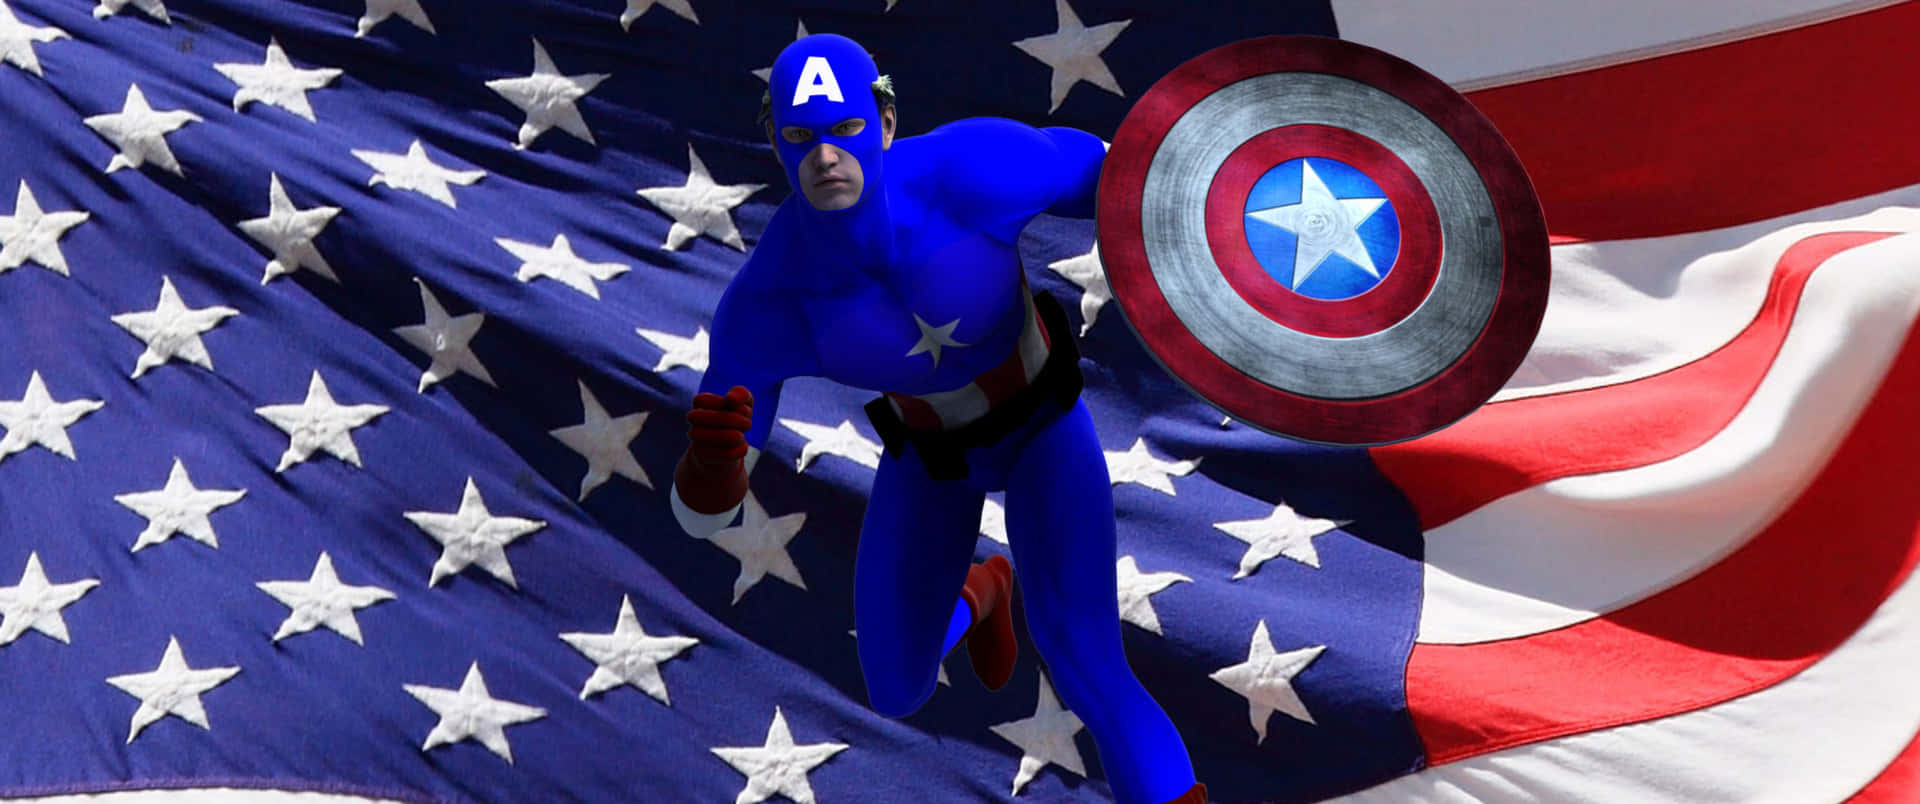 Elúltimo Patriota - Capitán América En Acción.